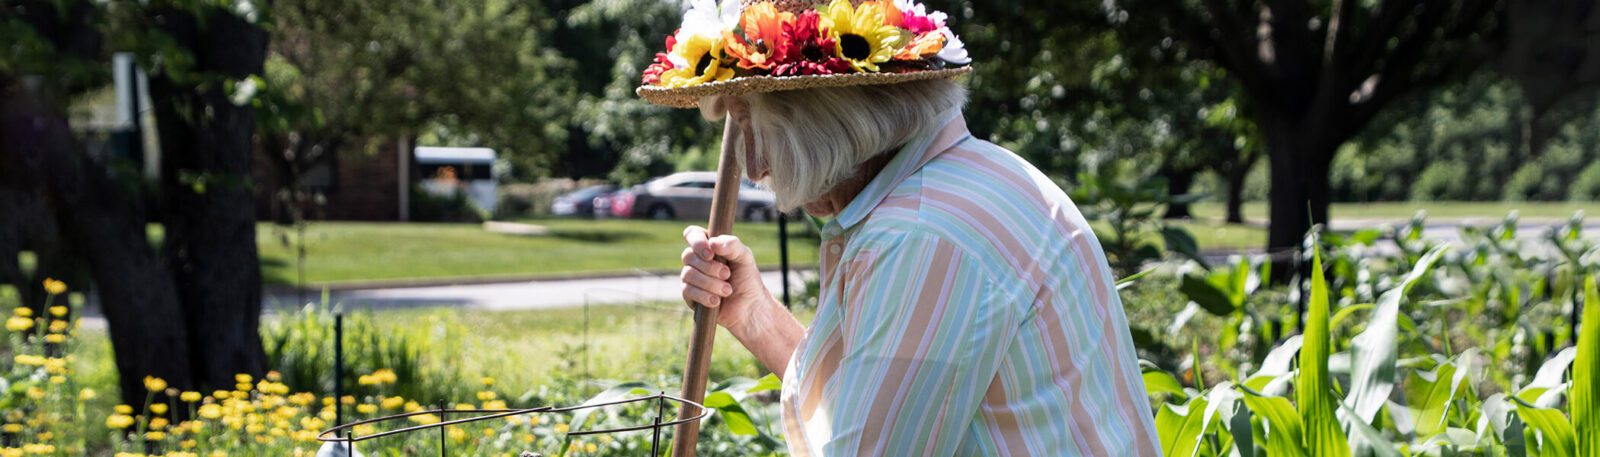 woman gardening wearing a flower hat